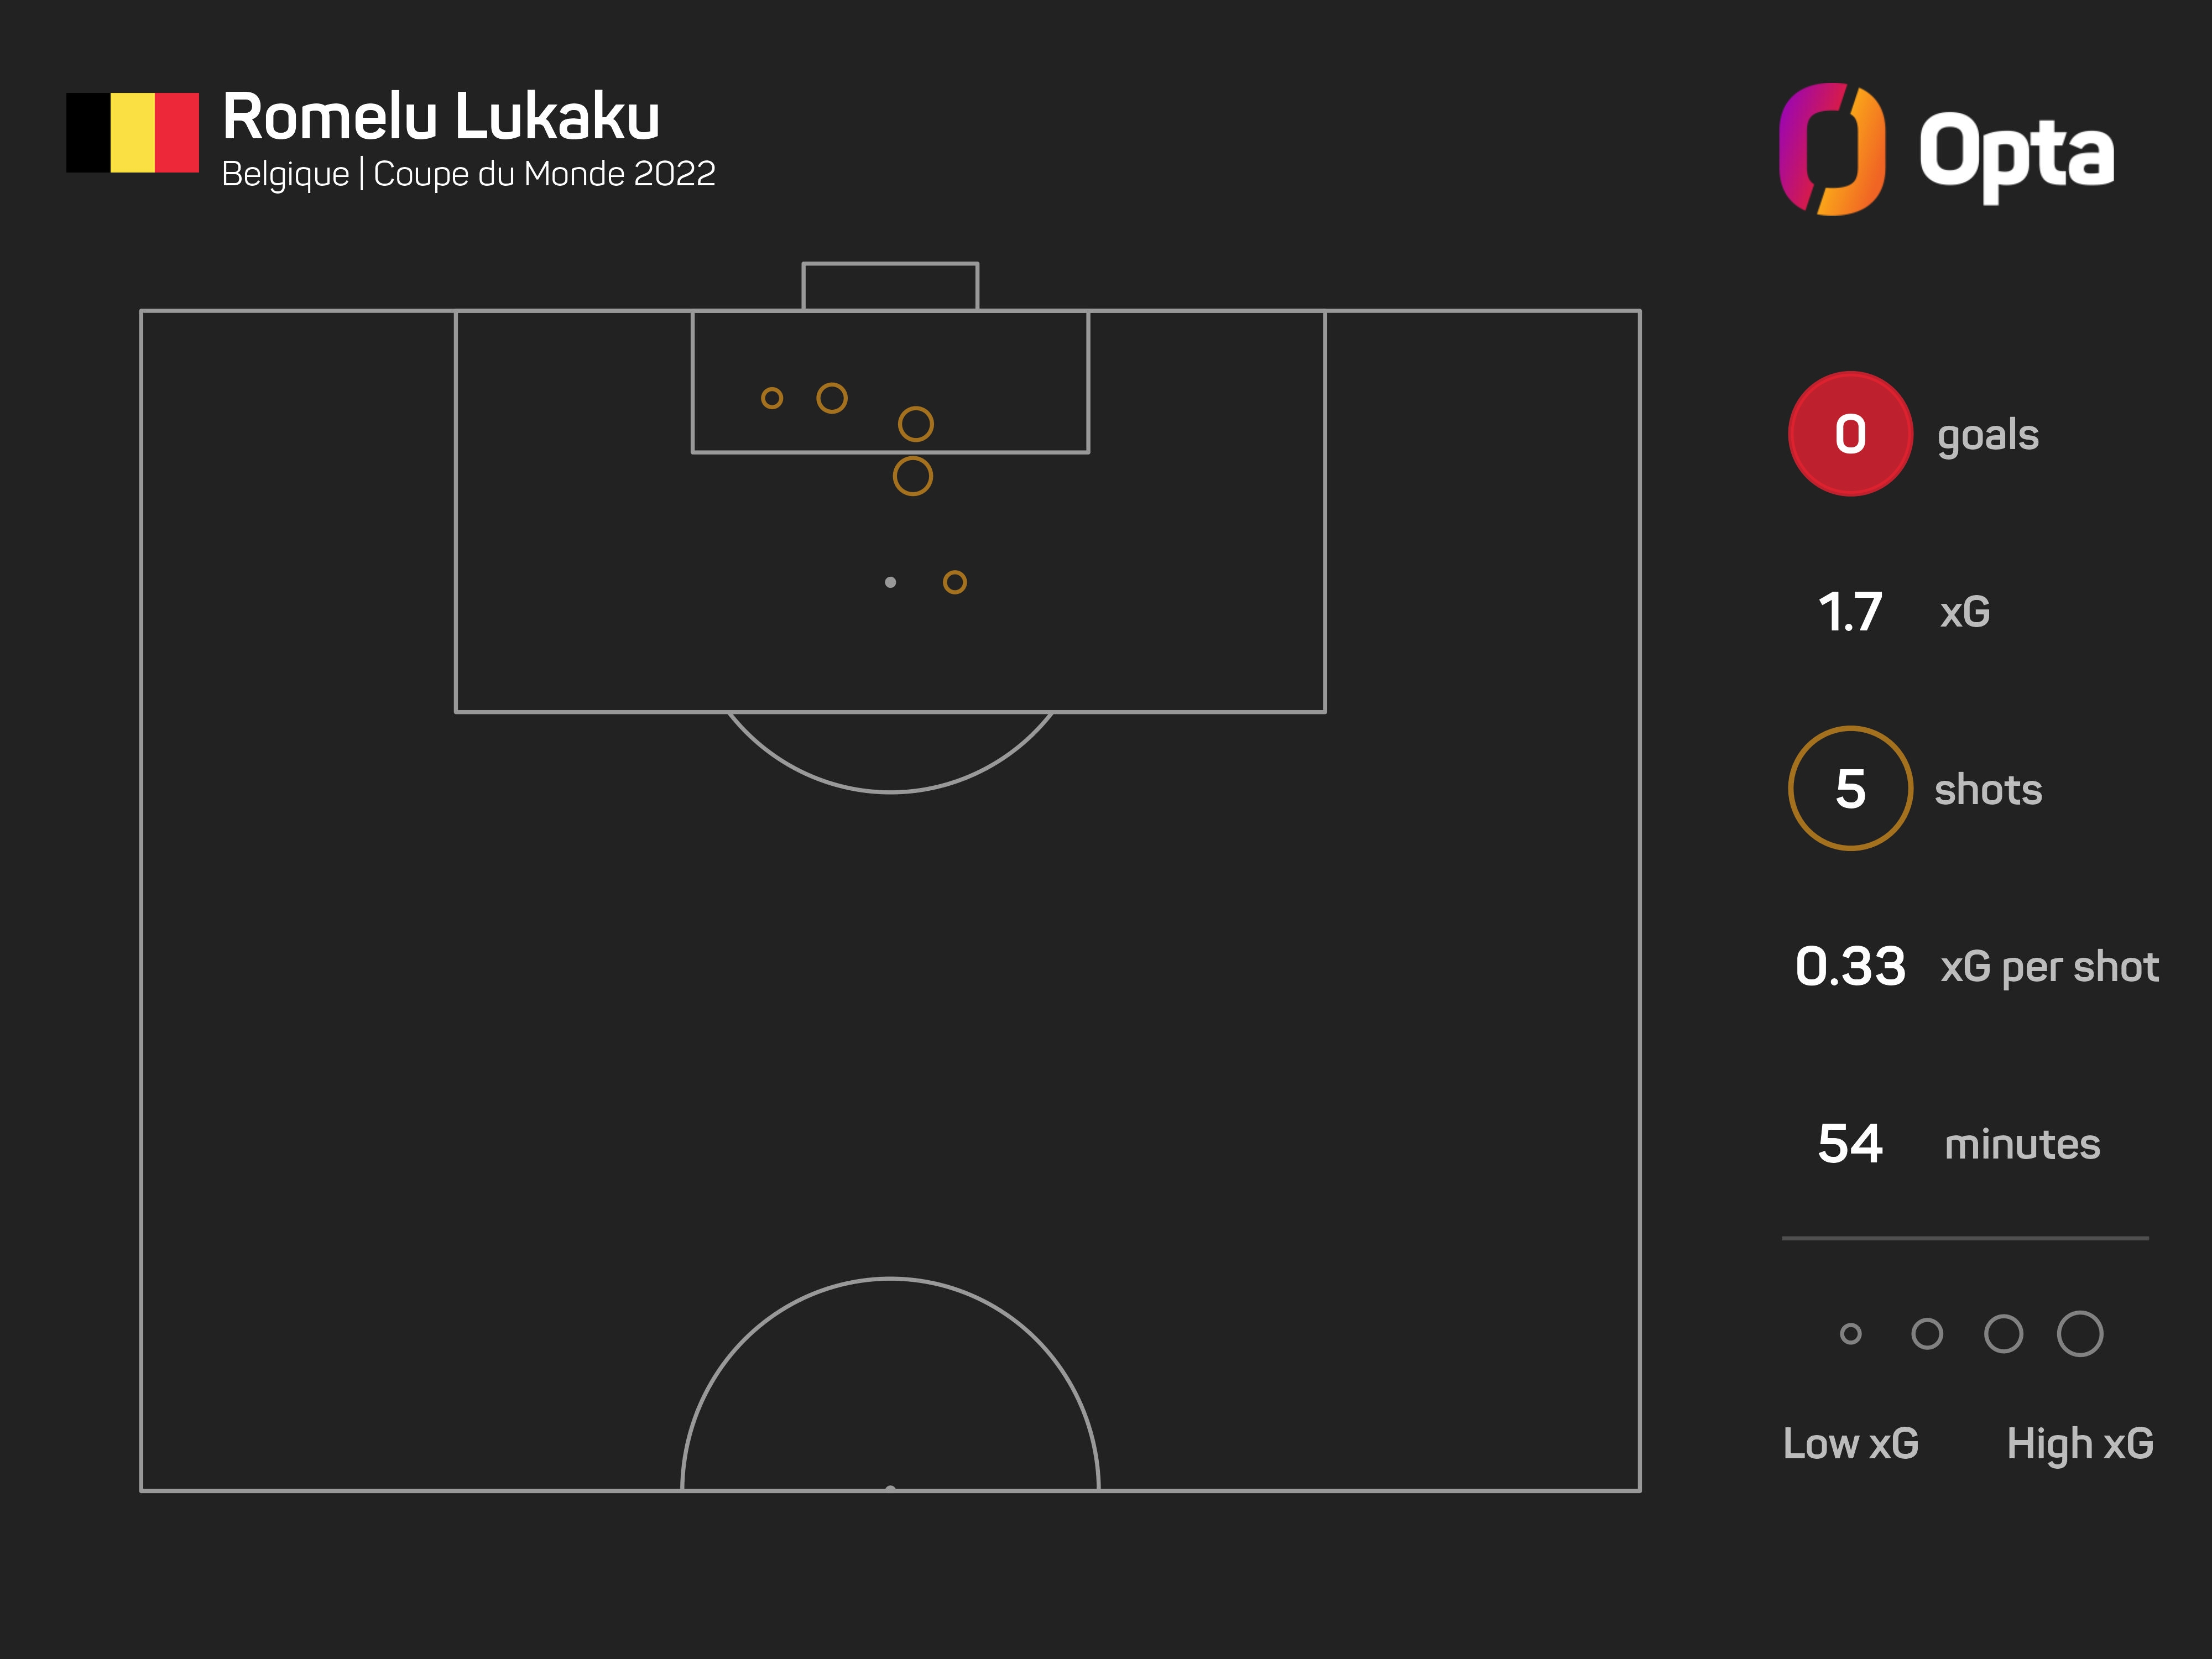 卢卡库本届54分钟射门5次，预期进球1.7球进球0个